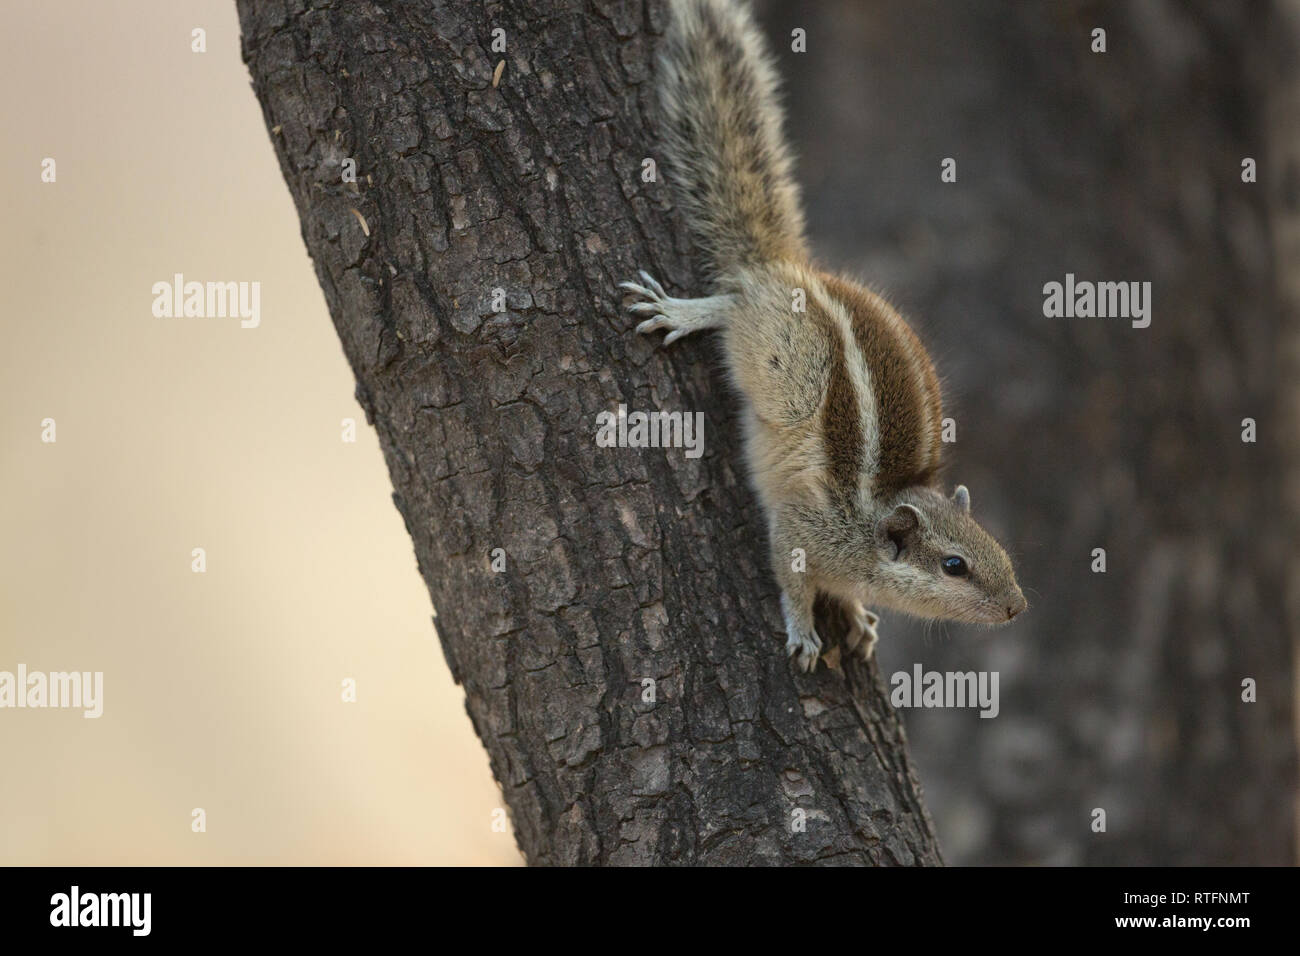 Fünf-gestreiften Palm Squirrel (Funambulus pennantii). Absteigend aus einem Baumstamm, Kopf zuerst. Notieren Sie die Position der hinteren Füße und Ziffern, greifen die Rinde Stockfoto